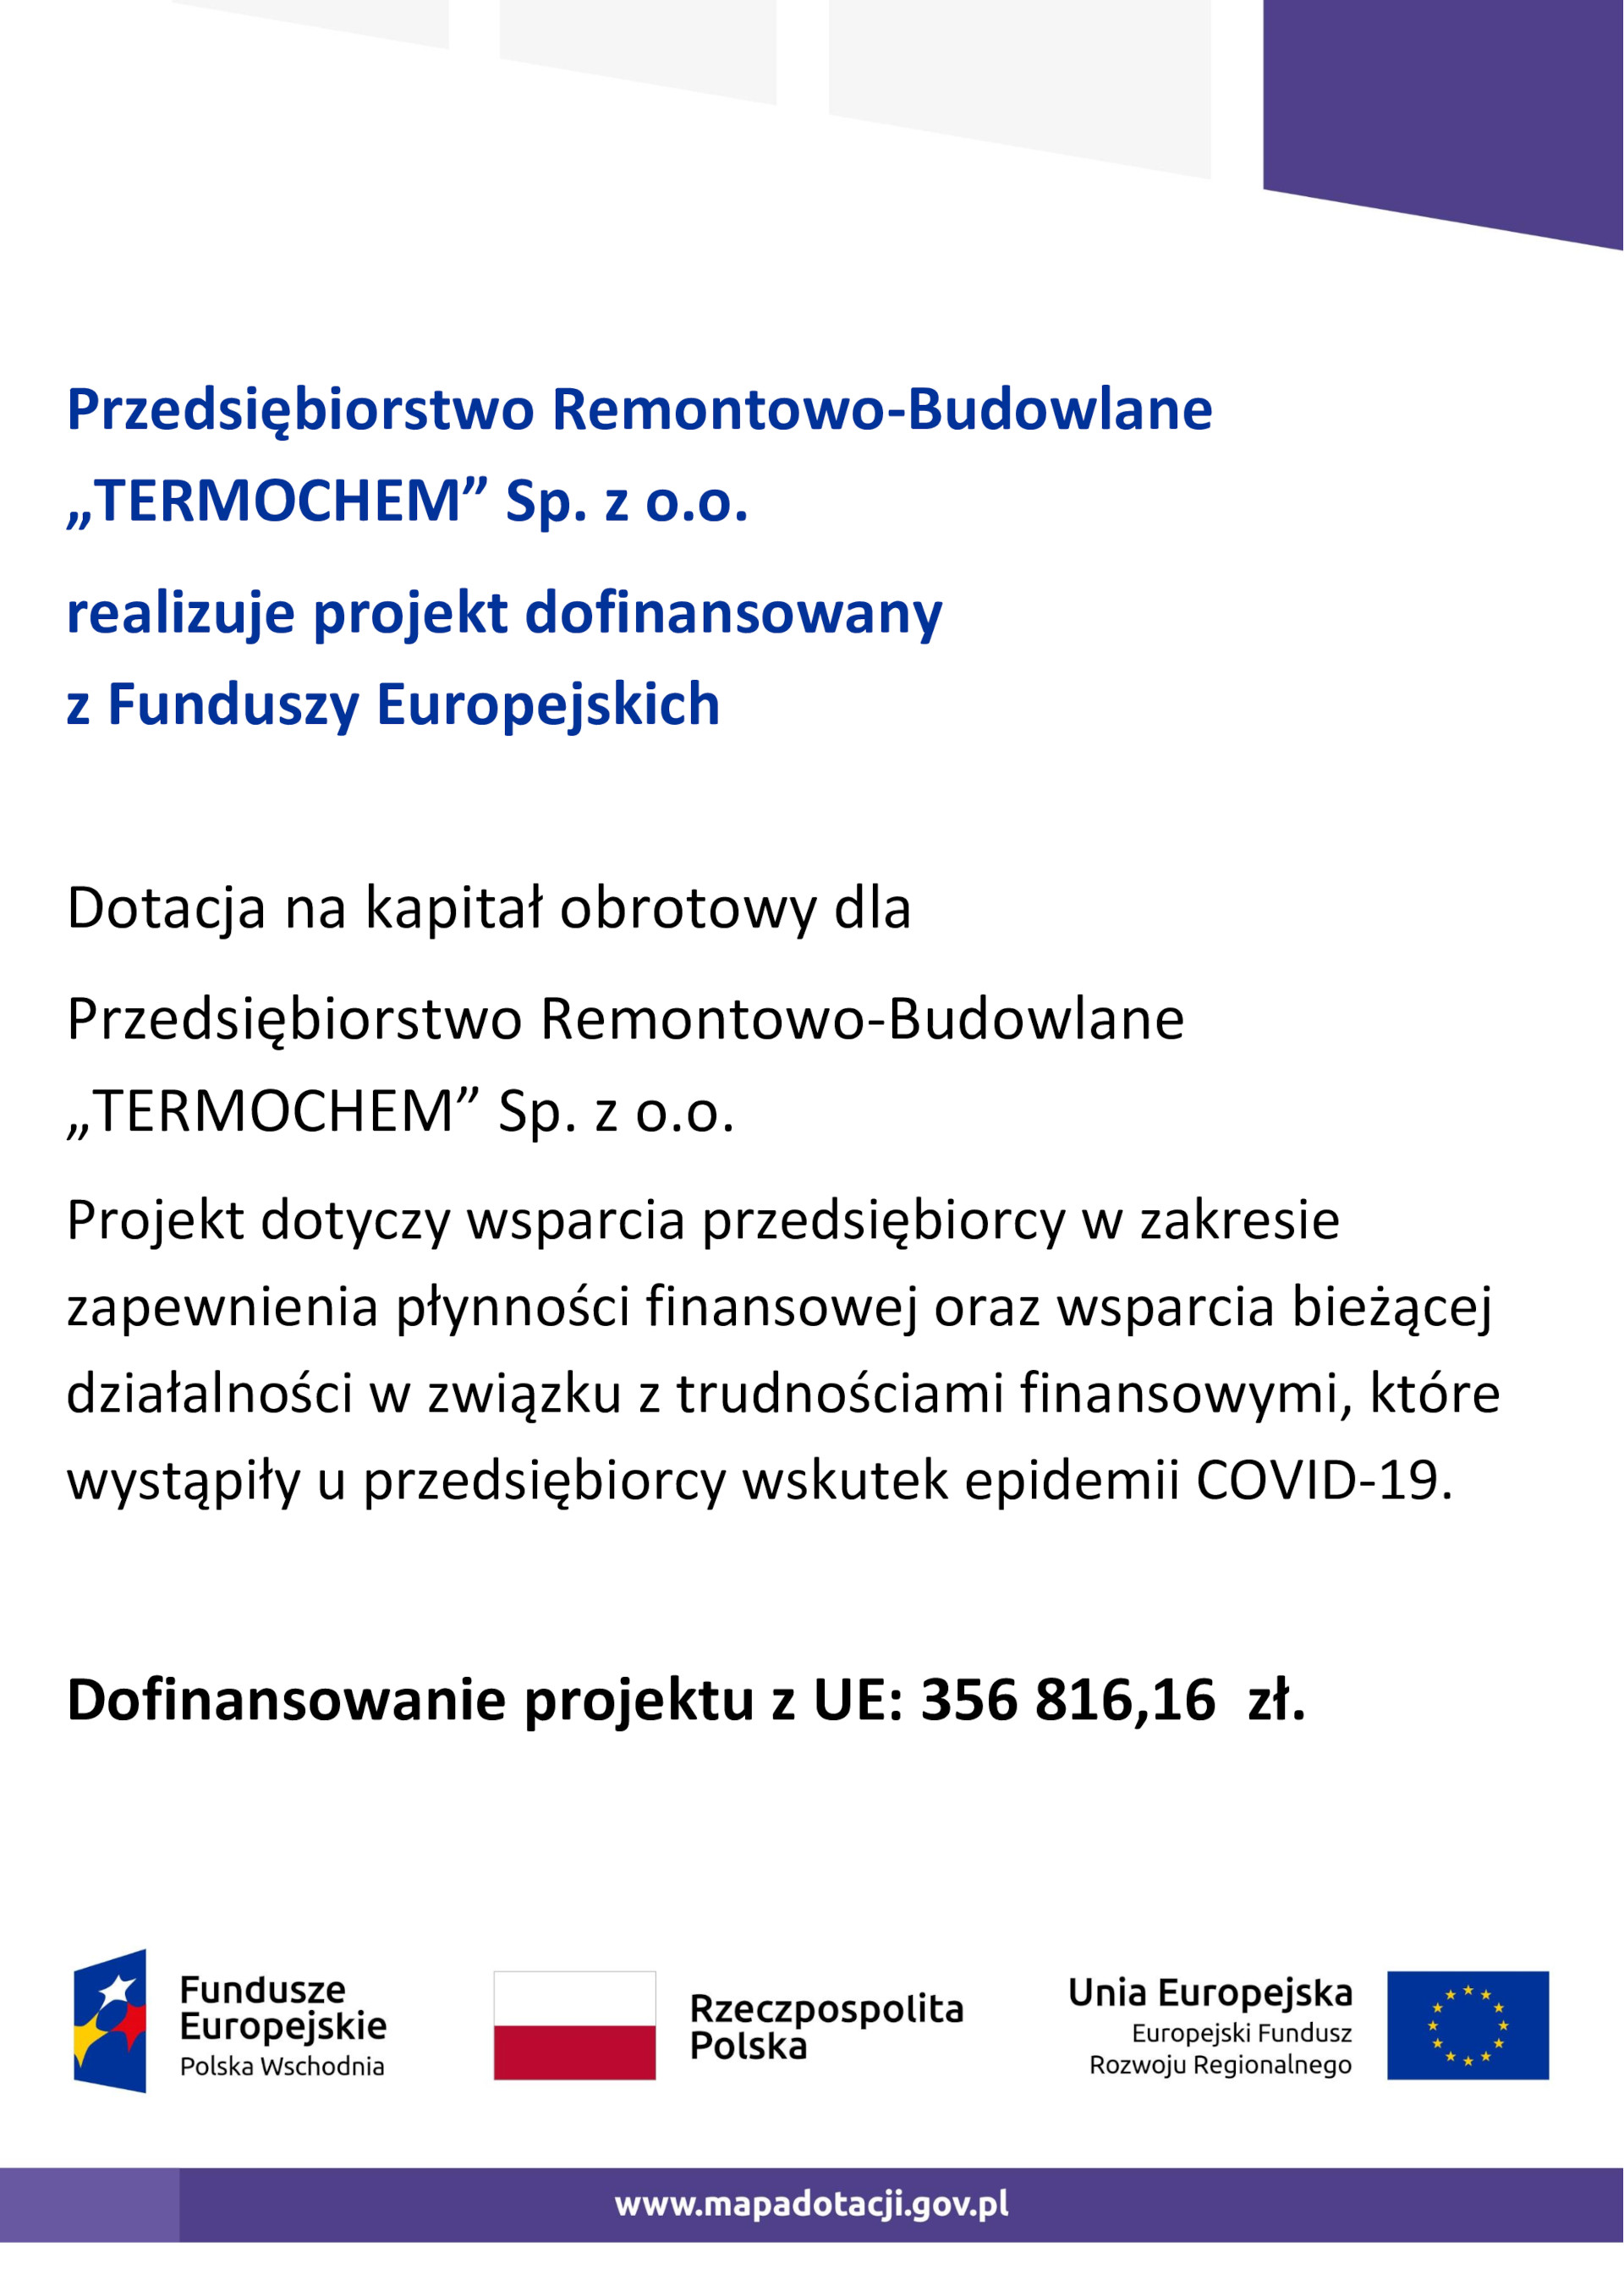 Przedsiębiorstwo Remontowo-Budowlane TERMOCHEM Sp. z o.o.
realizuje projekt dofinansowany z Funduszy Europejskich